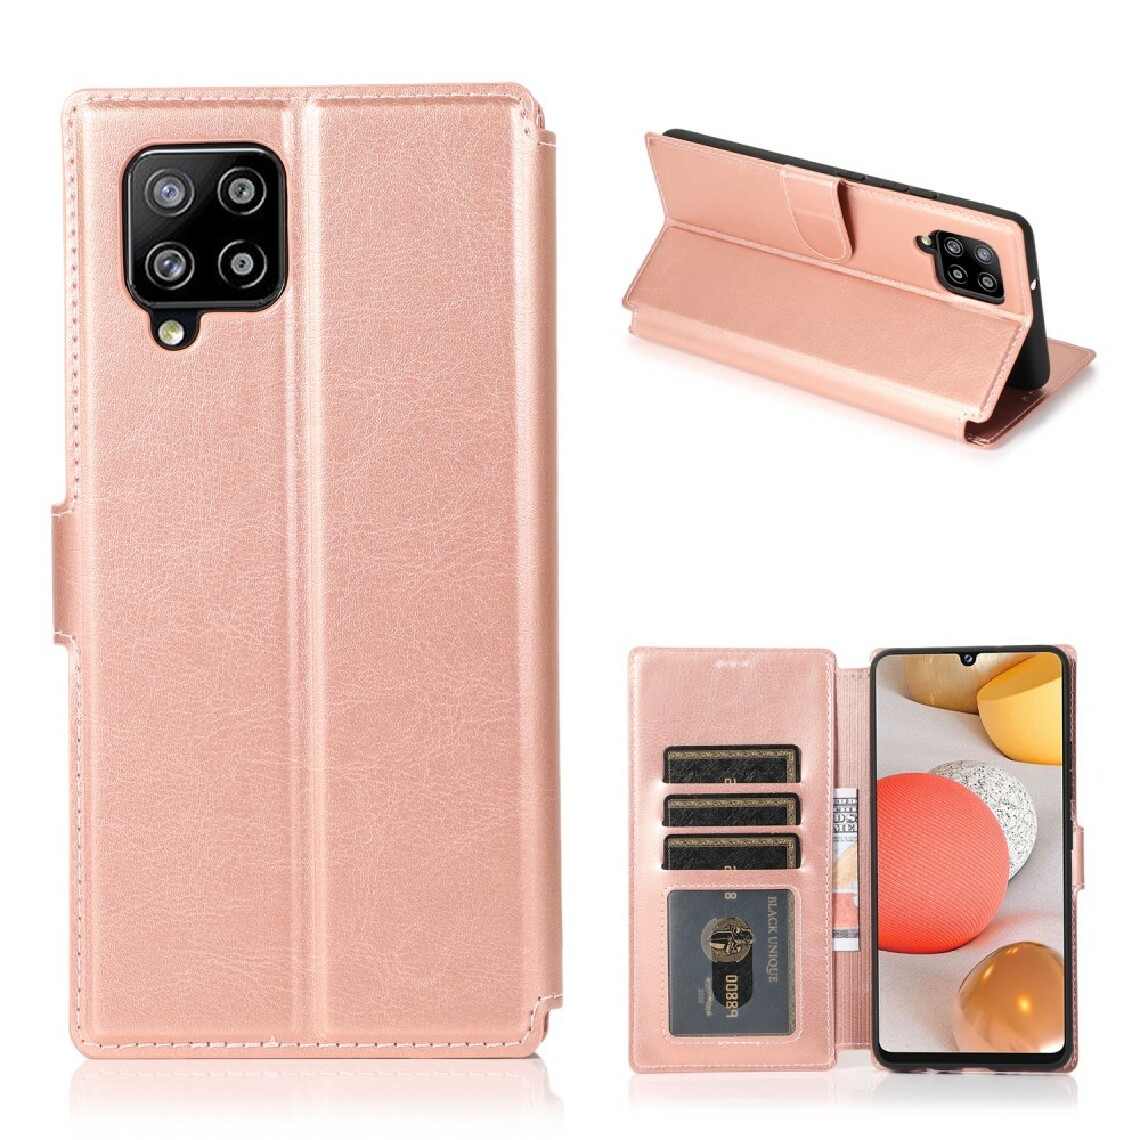 Other - Etui en PU + TPU intérieur souple or rose pour votre Samsung Galaxy A42 5G - Coque, étui smartphone